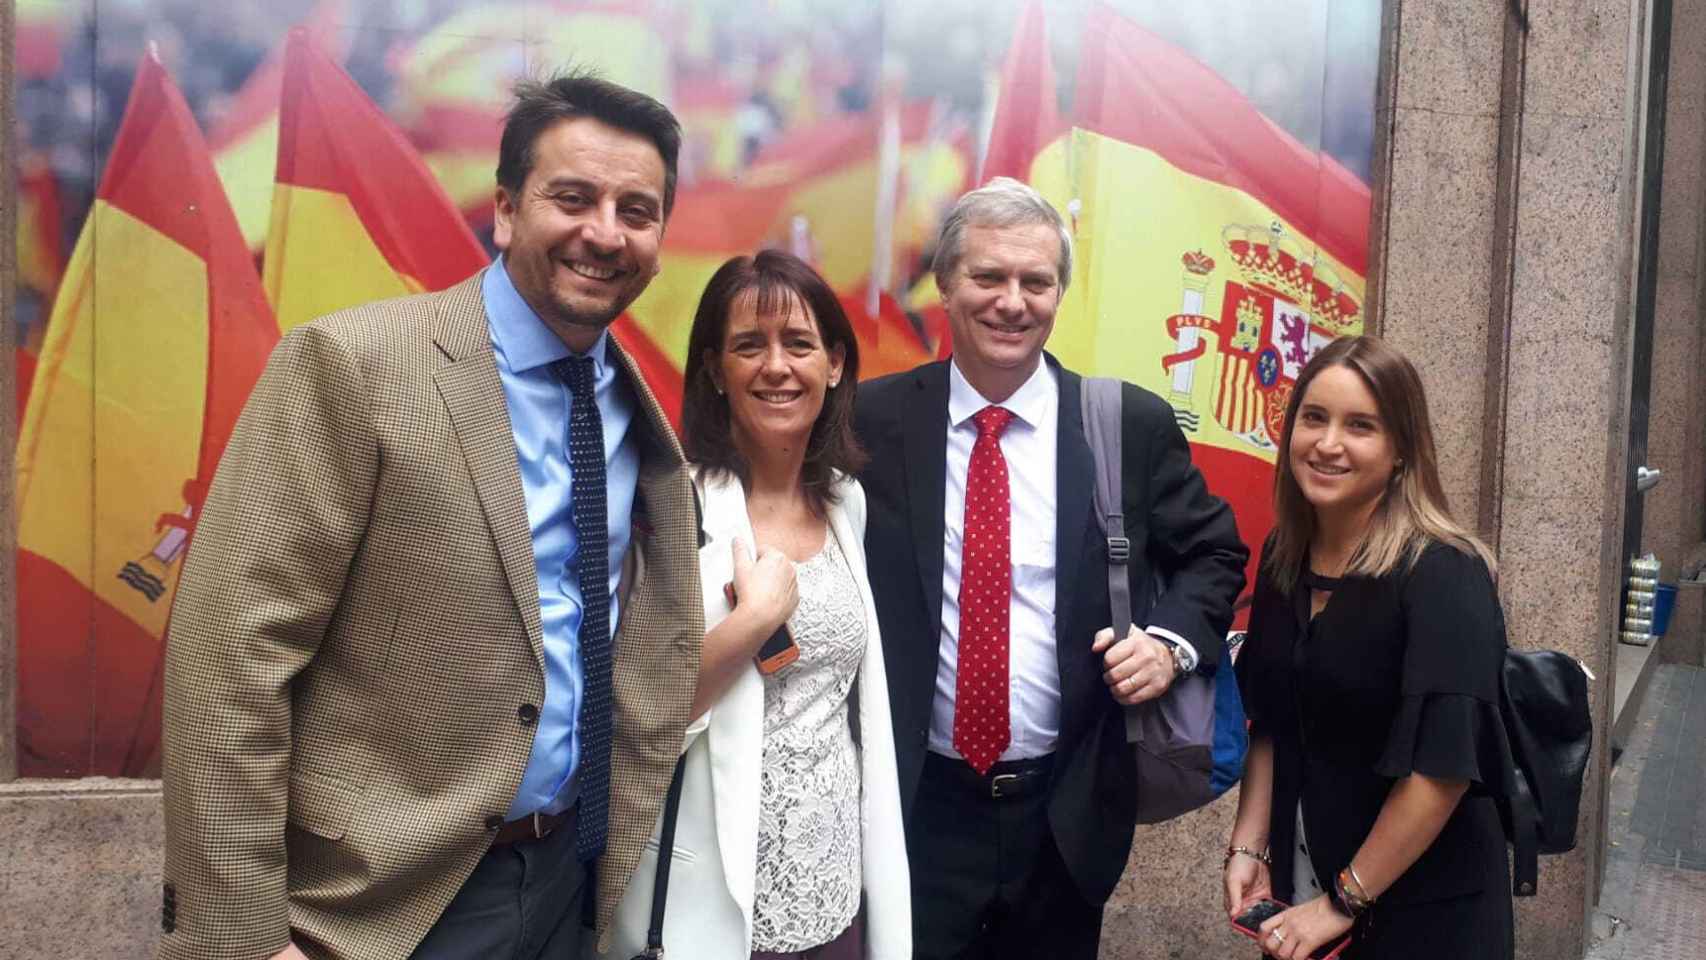 José Antonio Kast en el centro, acompañado a la derecha por su mujer Pía Adriasola y Alejandro Martini, dirigente del Partido Republicano. A la derecha, Carolina Araya, su jefa de Prens.